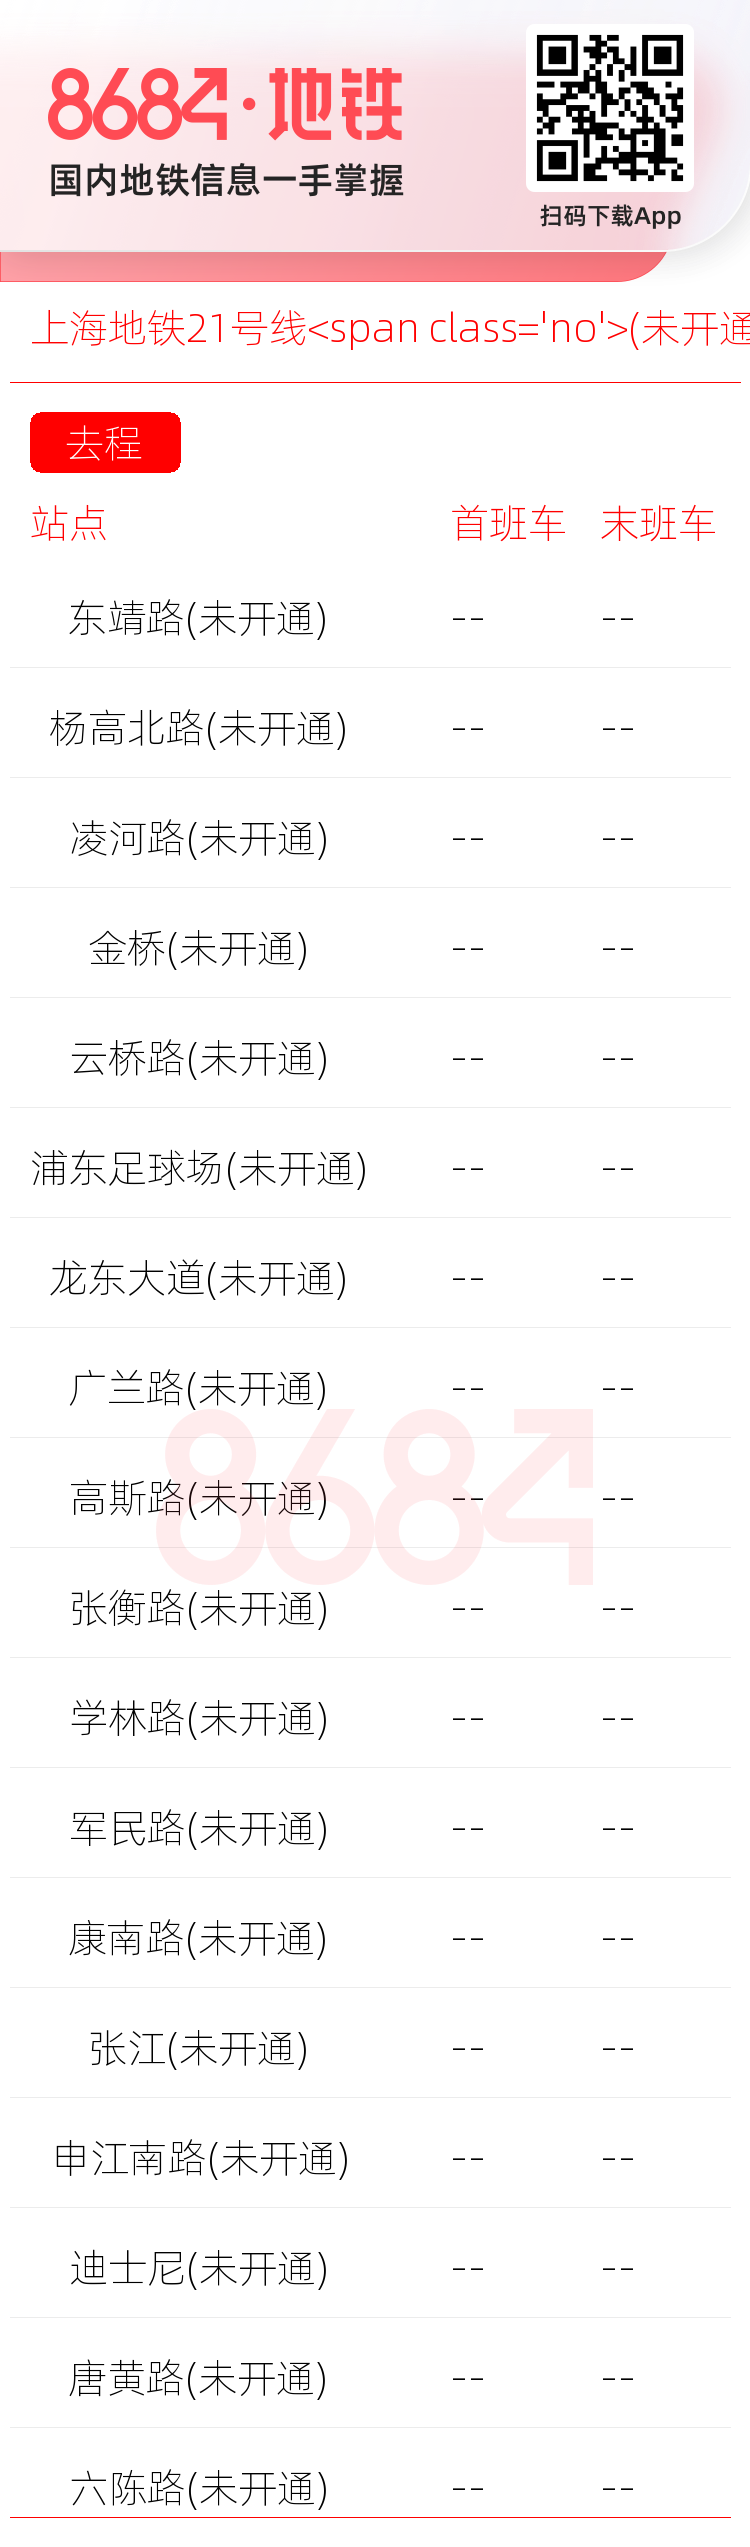 上海地铁21号线<span class='no'>(未开通)</span>运营时间表